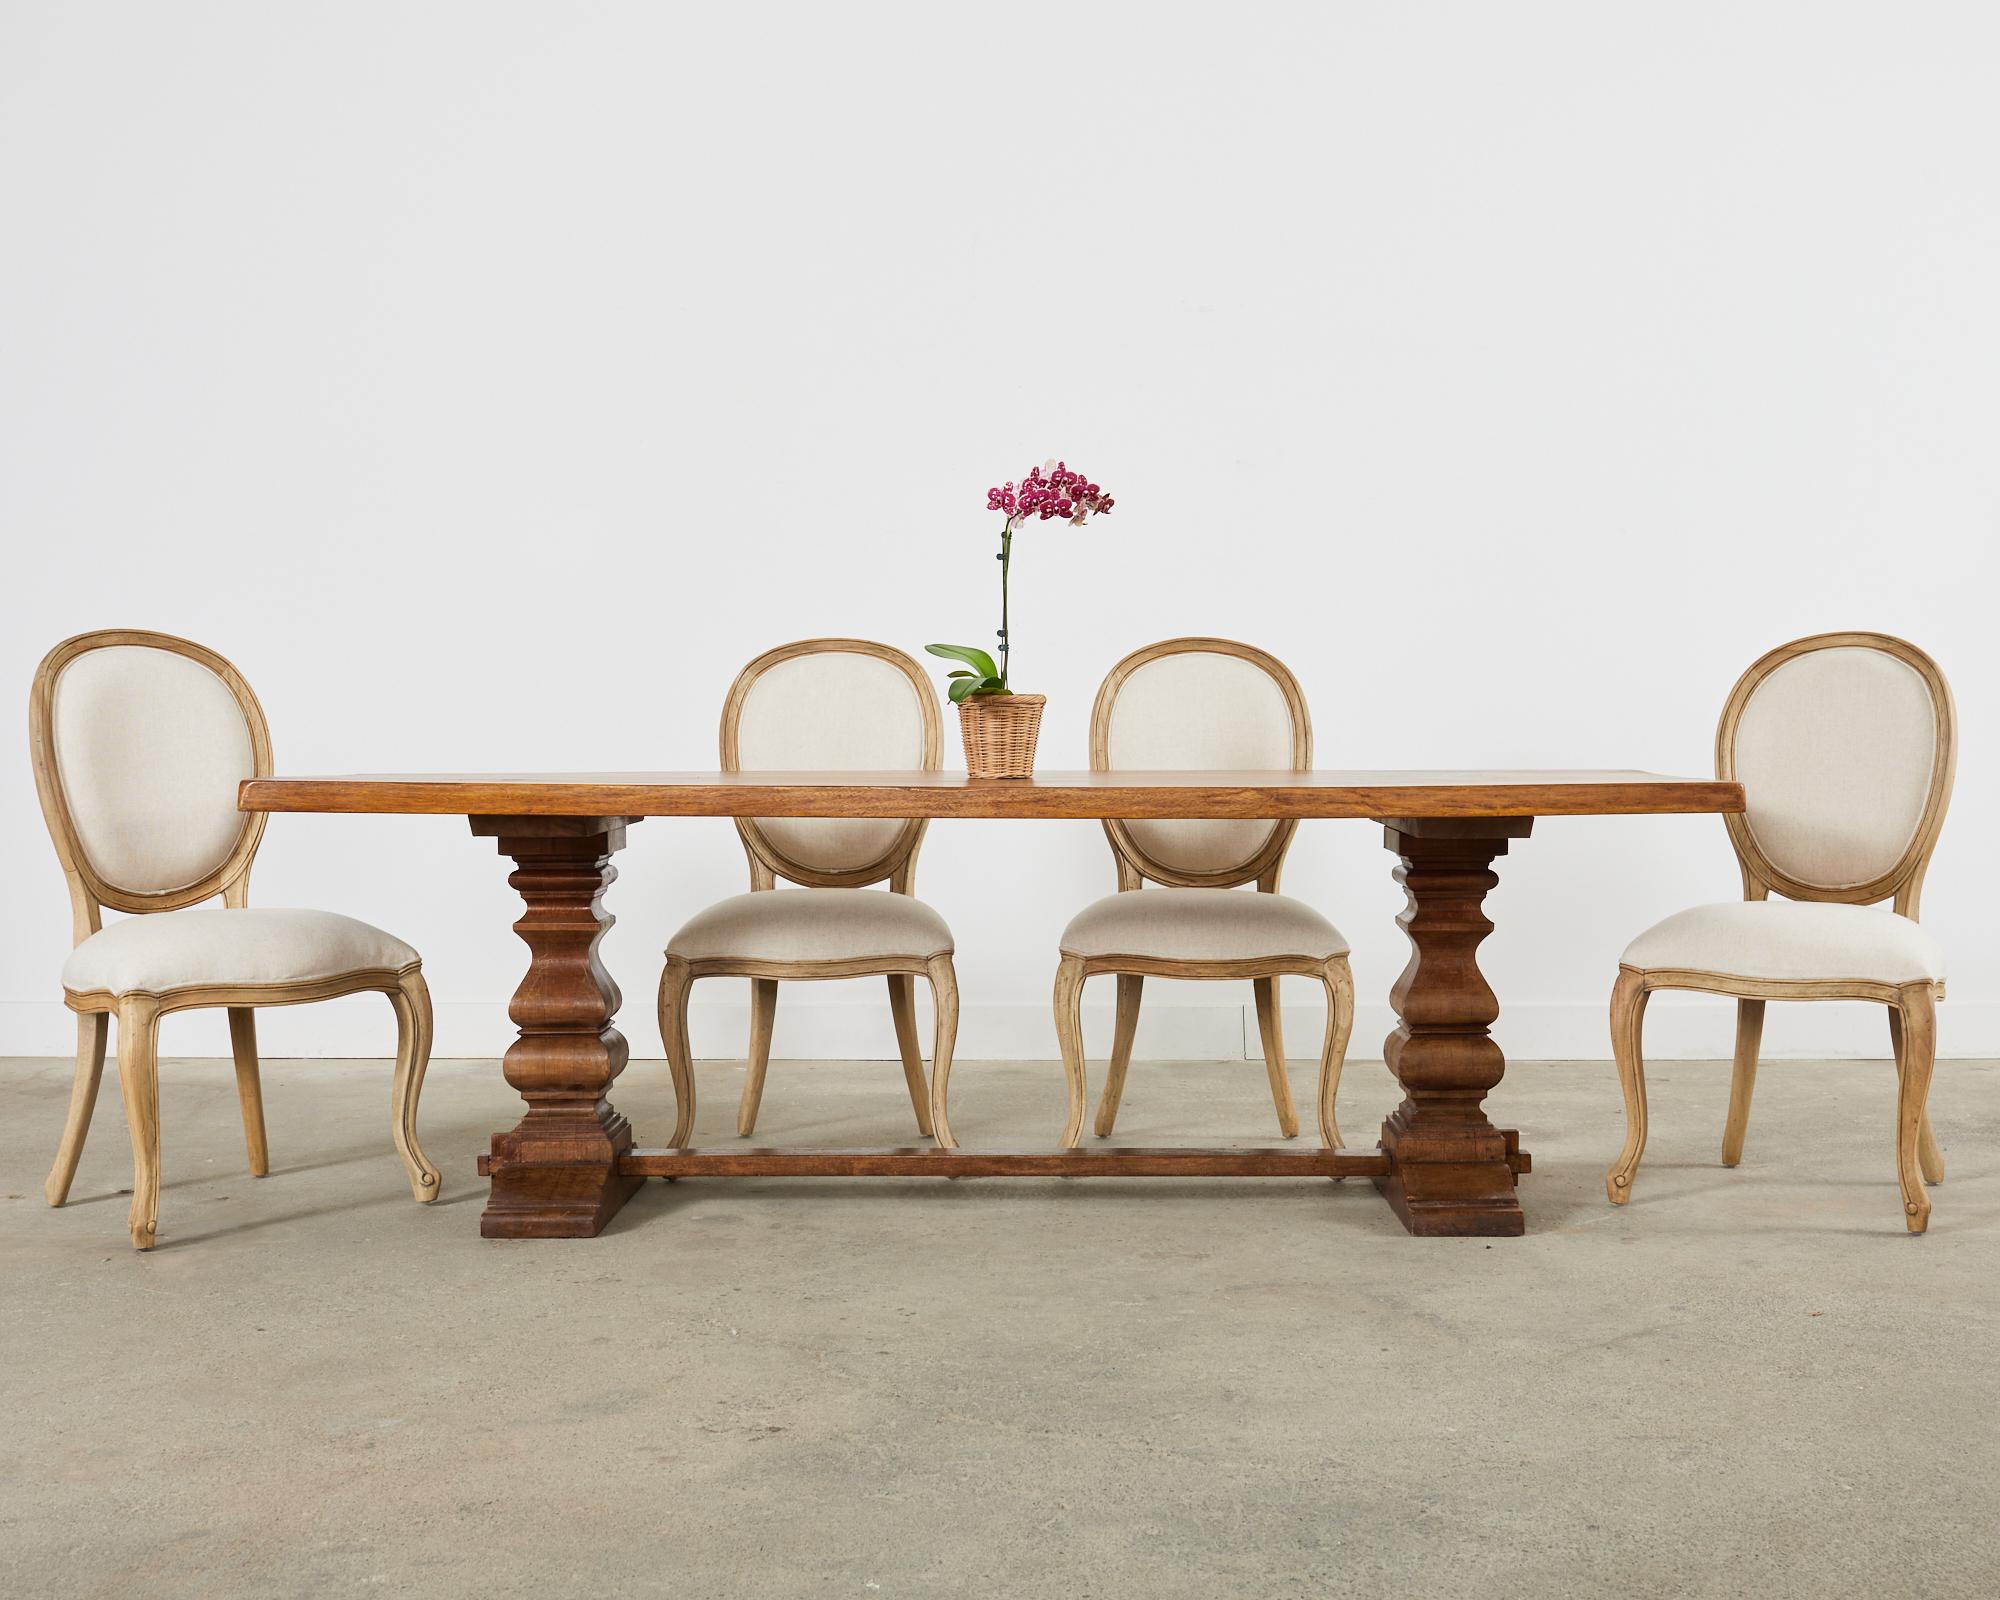 Magnifique ensemble de six chaises de salle à manger fabriquées dans le style provincial français. Les chaises sont dotées de grands cadres en bois épais avec une finition moderne organique naturelle sur le bois. La patine naturelle met en valeur la